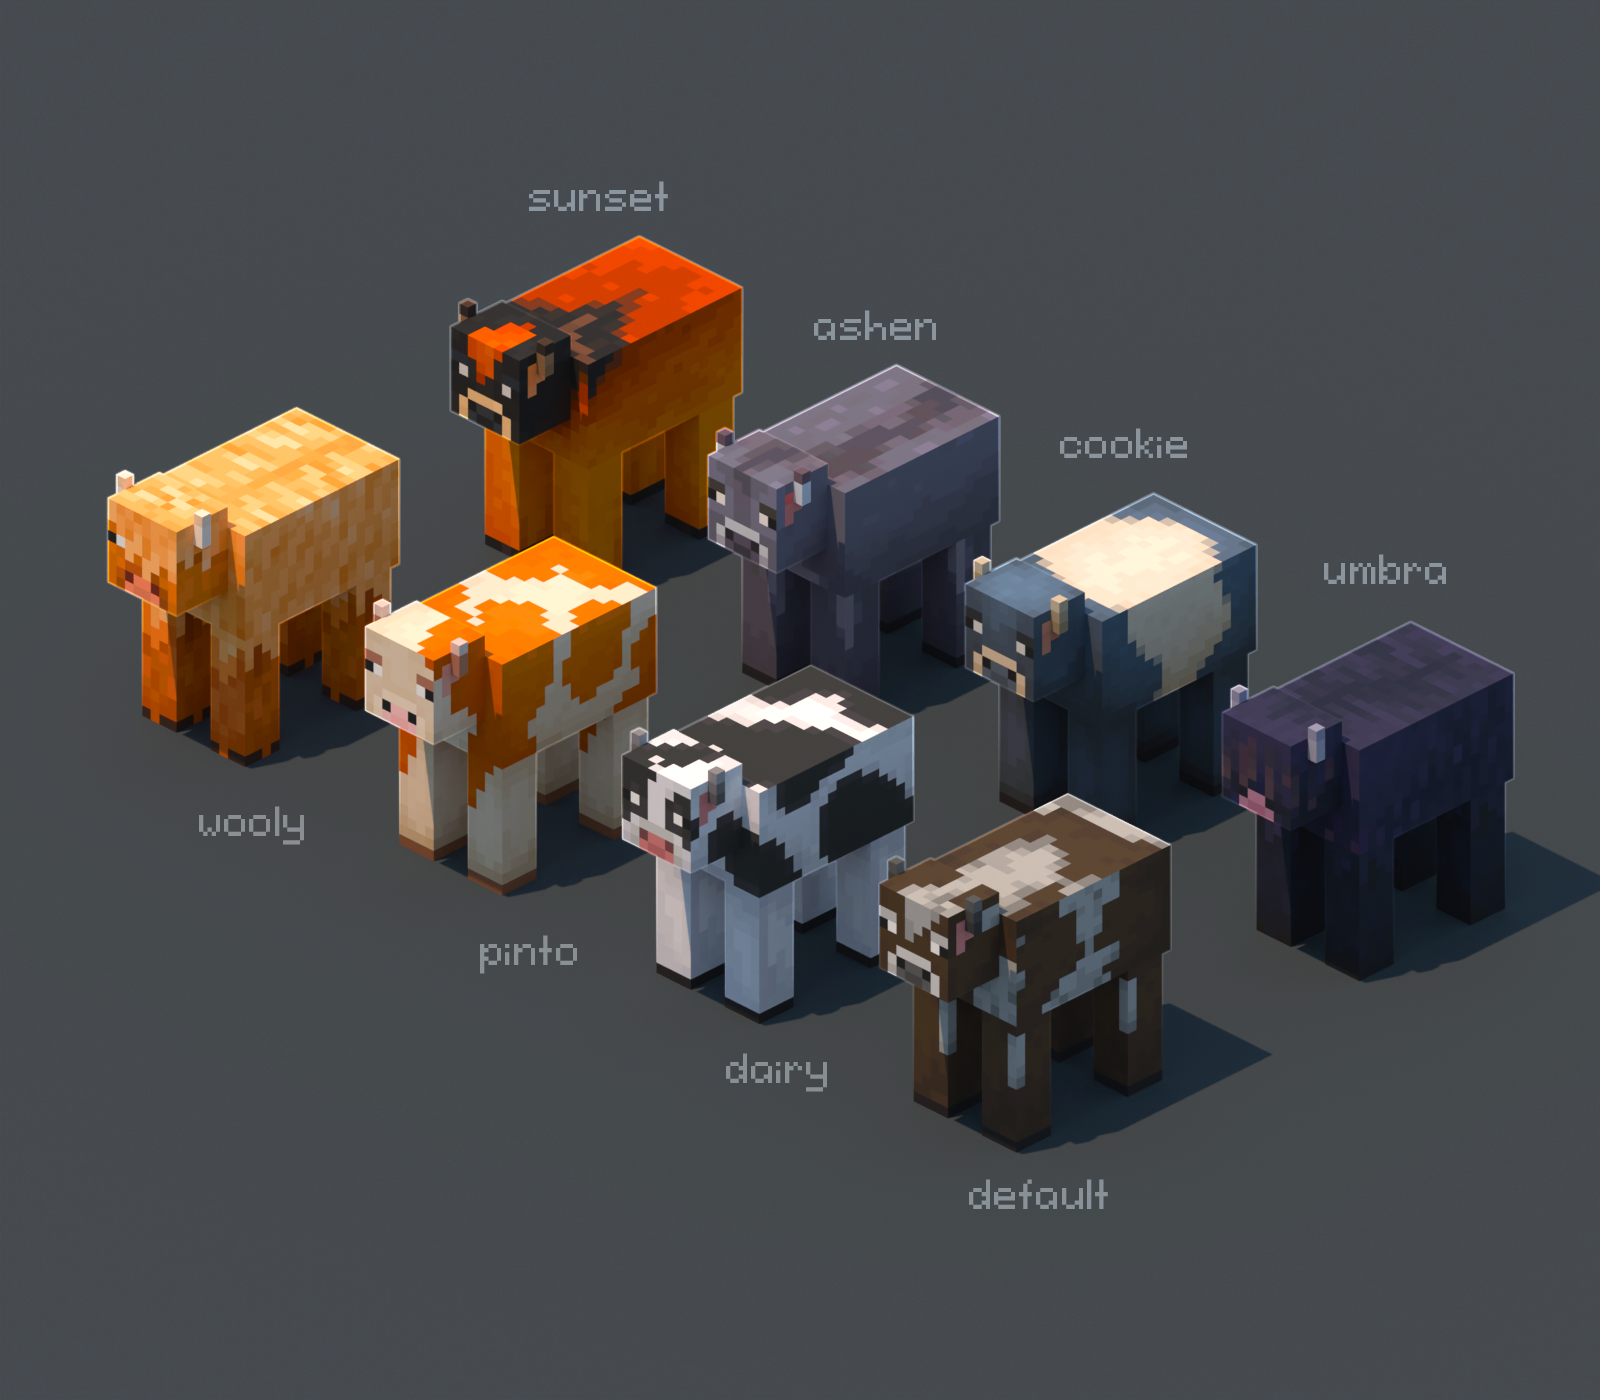 More Mob Variants - расширение мобильного мира Майнкрафта с уникальными существами